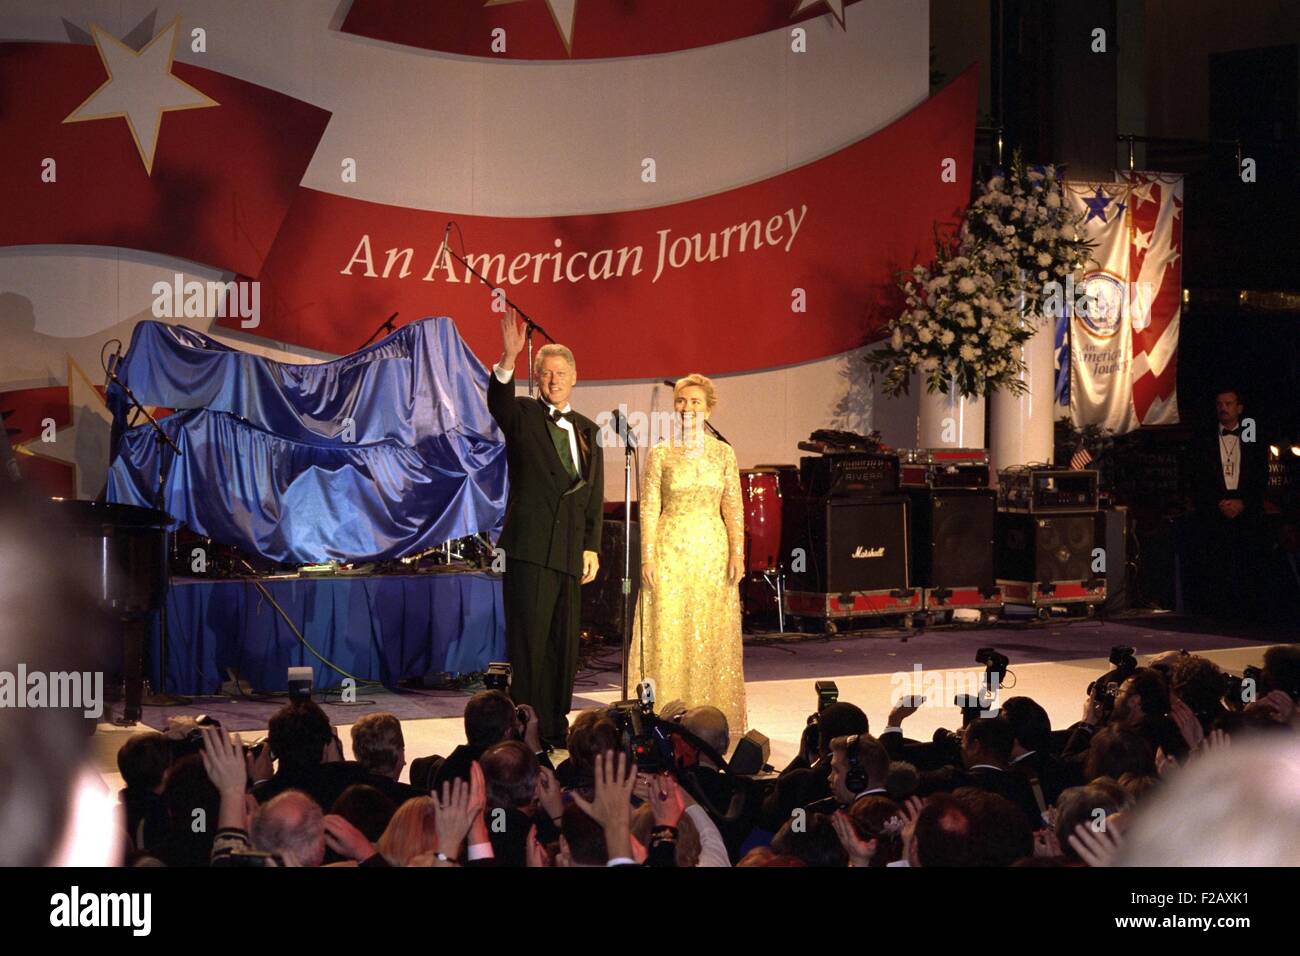 Première dame Hillary Clinton portant un Oscar de la Renta robe du soir à un bal inaugural de 1997. Le président Bill Clinton salue la foule au-delà des photographes de presse. Le 20 janvier 1997. (BSLOC 2015 2 198) Banque D'Images